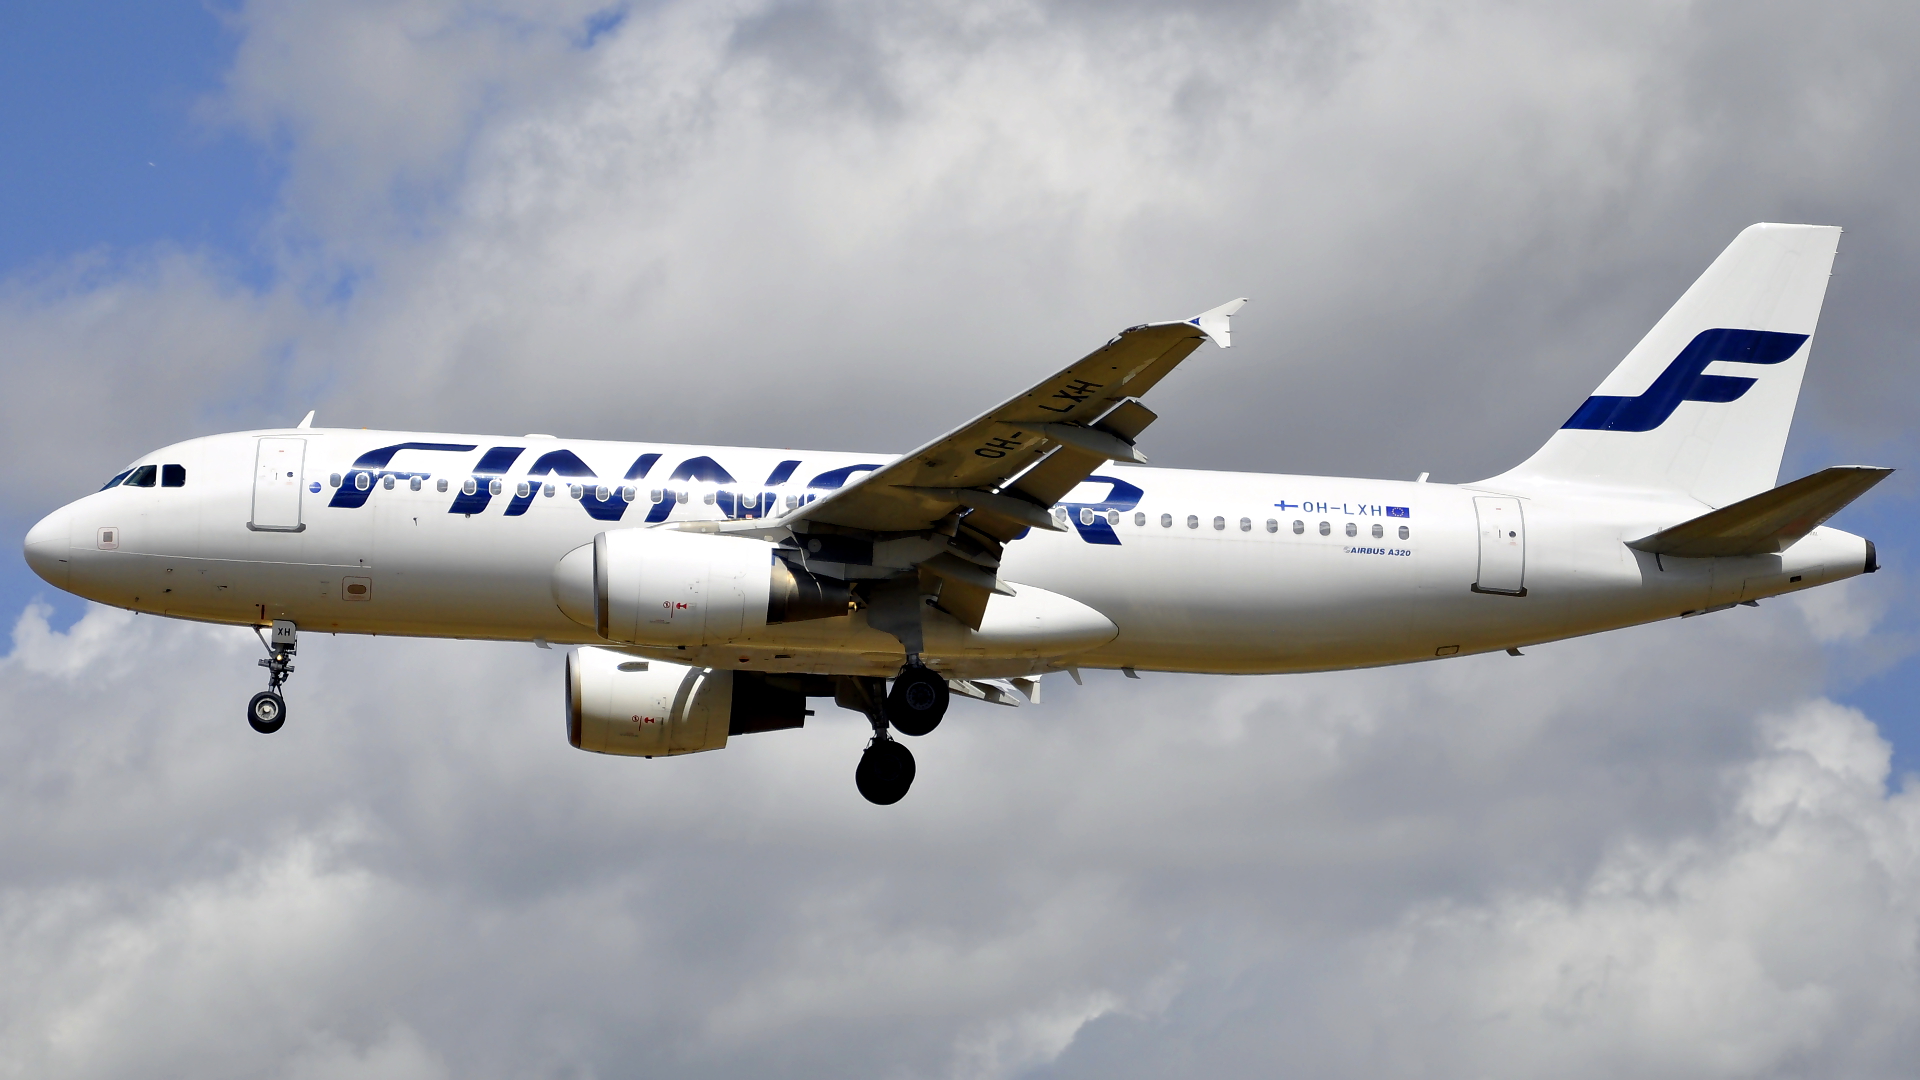 OH-LXH ✈ Finnair Airbus 320-214 @ London-Heathrow